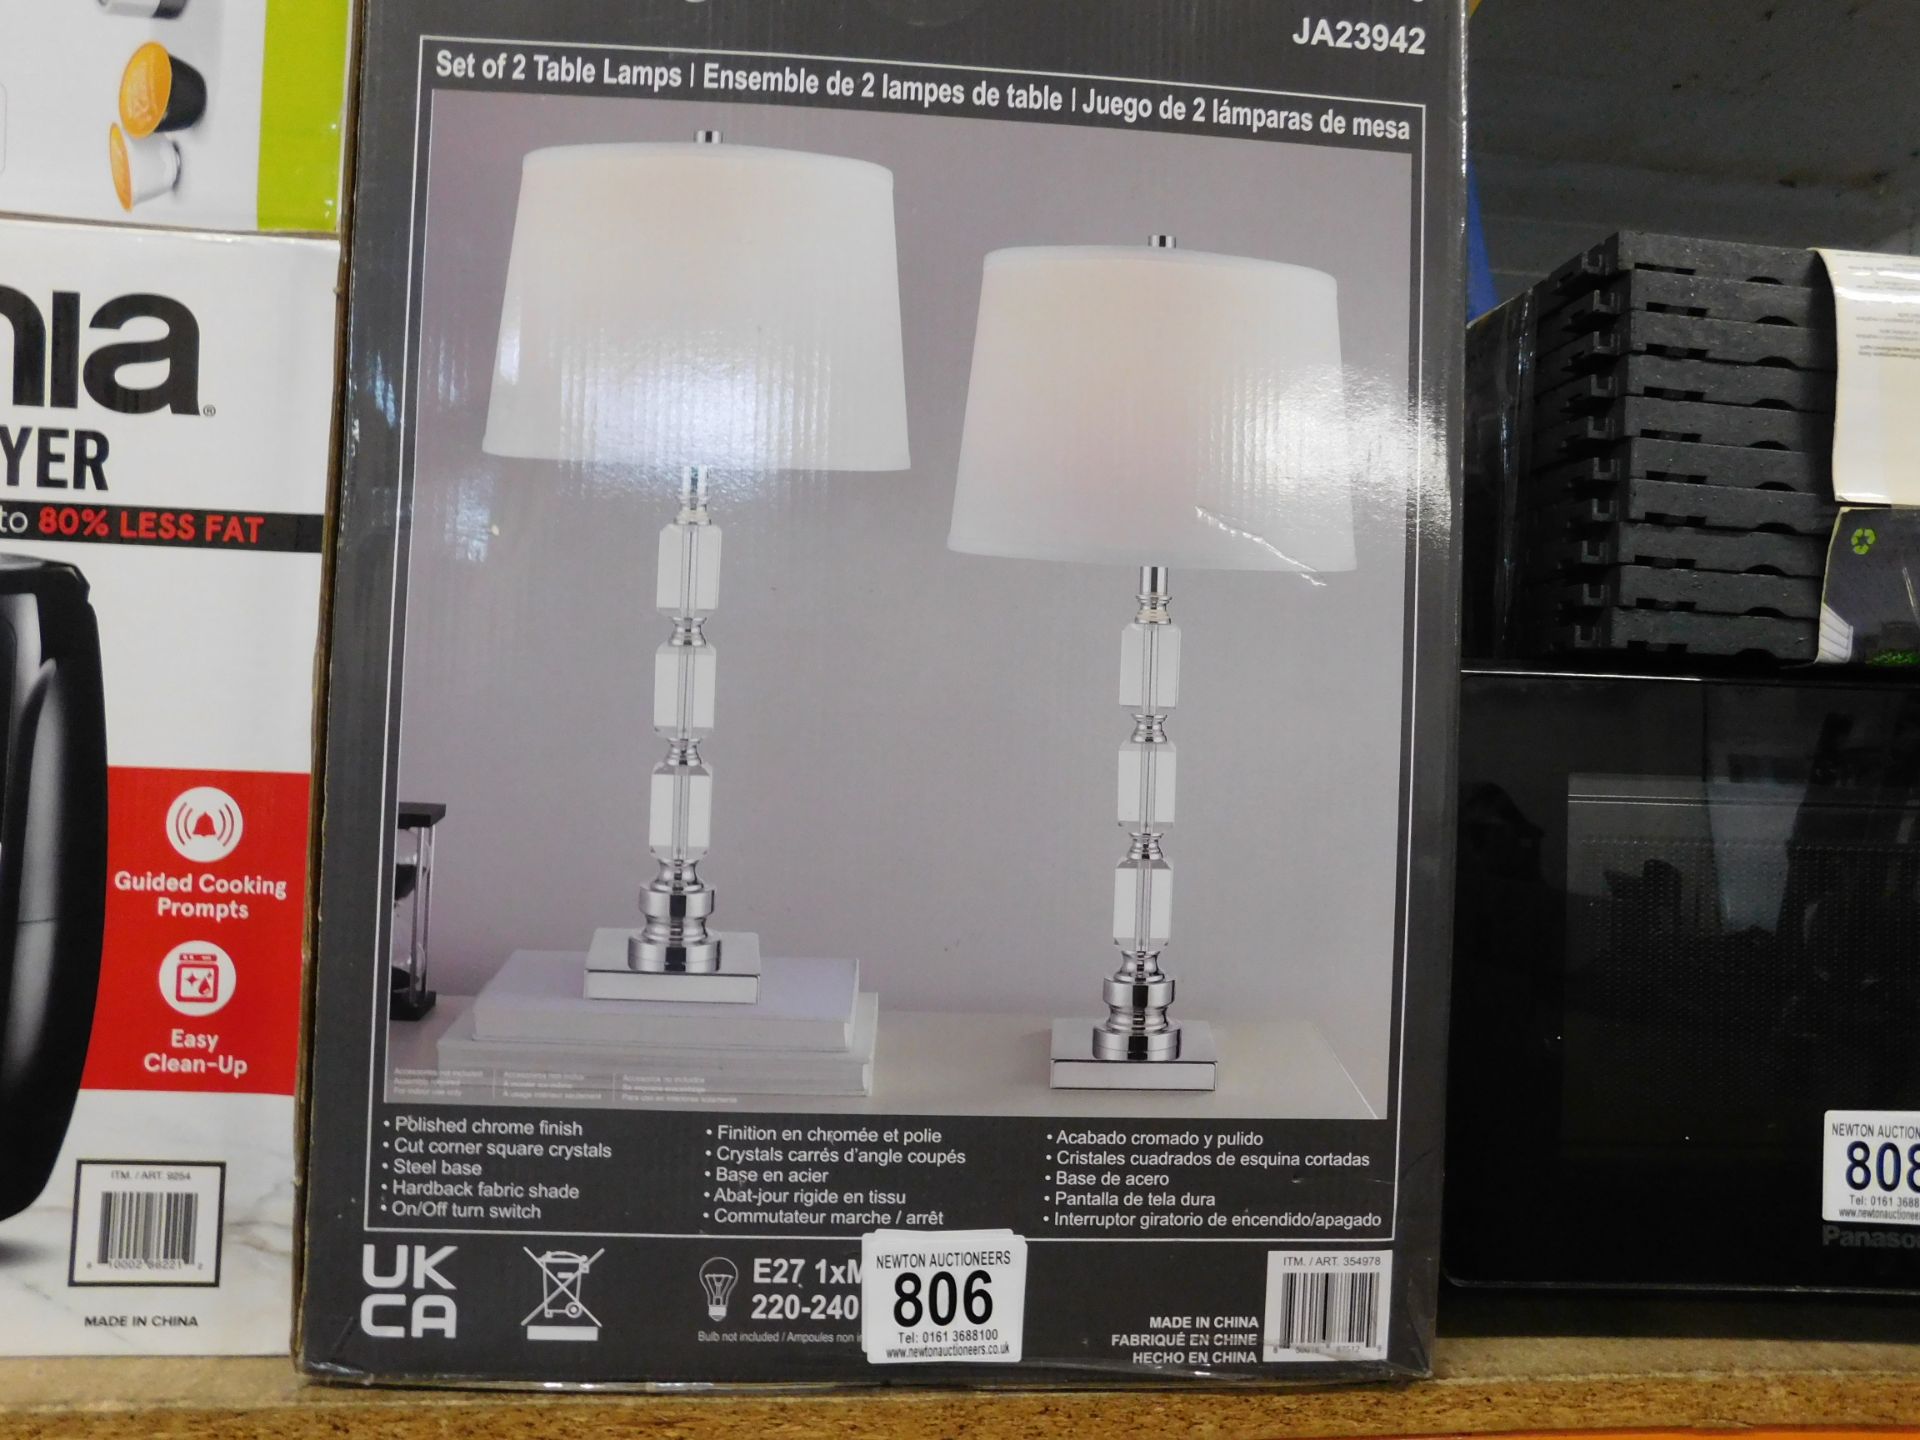 1 BOXED SET OF 2 TABLE LAMPS BRIDGEPORT DESIGN RRP Â£49.99